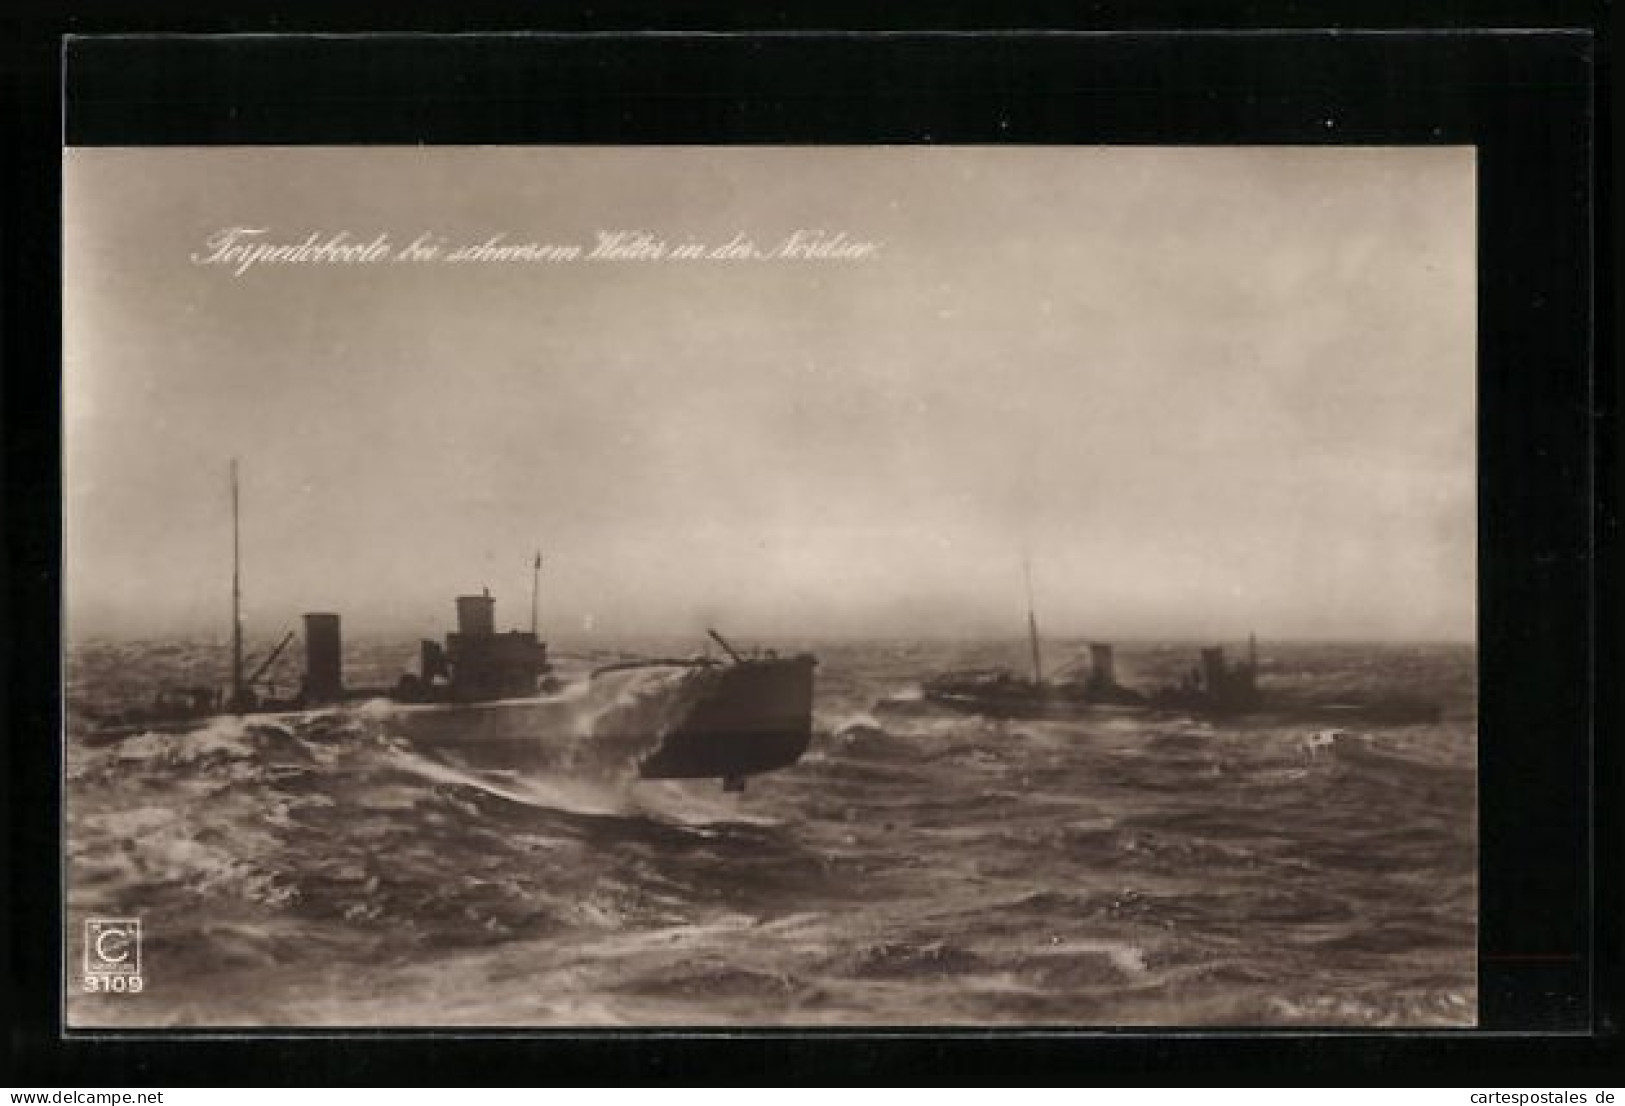 AK Torpedoboote Bei Schwerem Wetter In Der Nordsee  - Warships